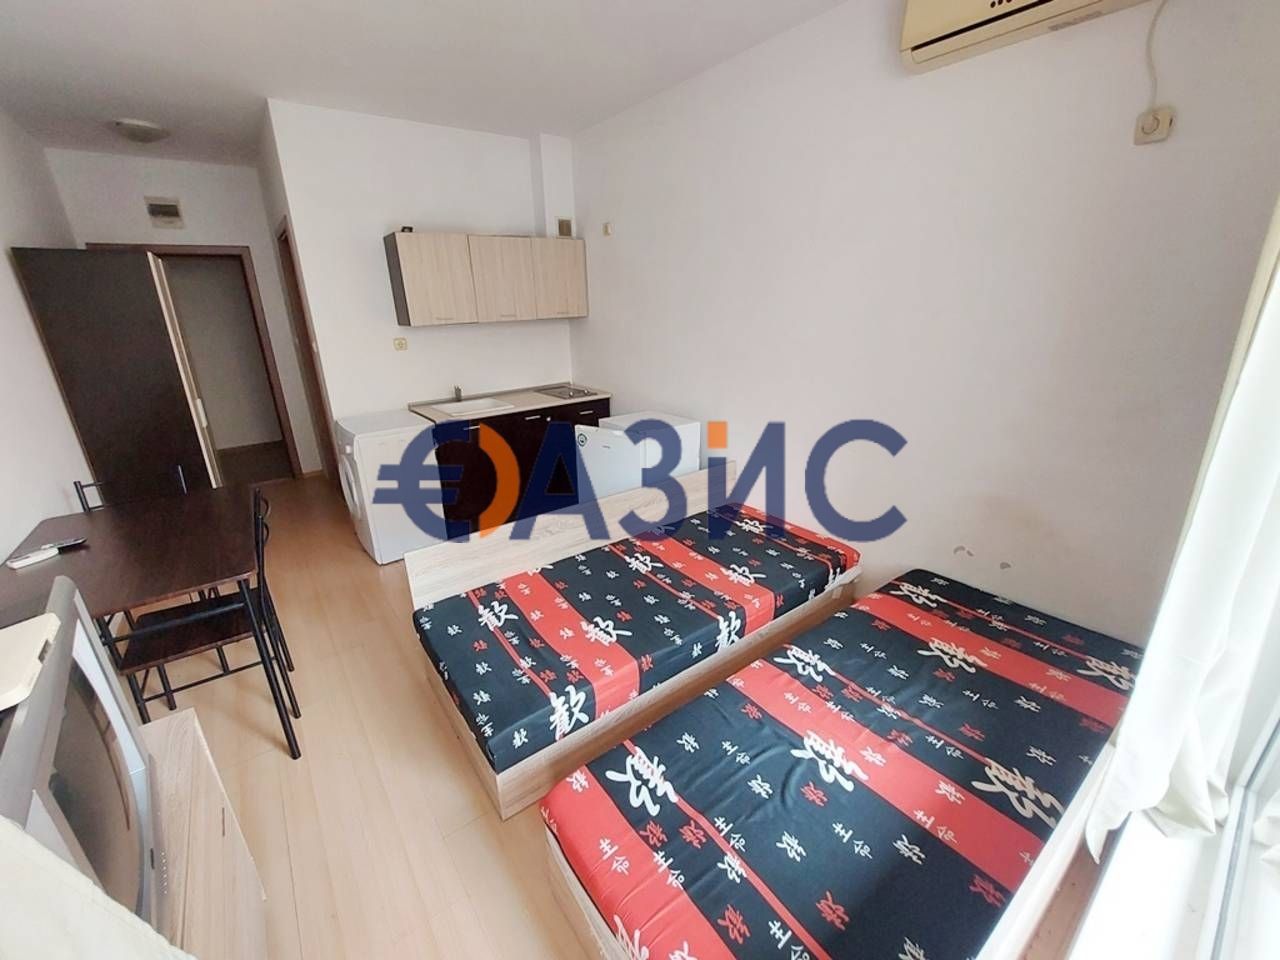 Apartment at Sunny Beach, Bulgaria, 28 sq.m - picture 1